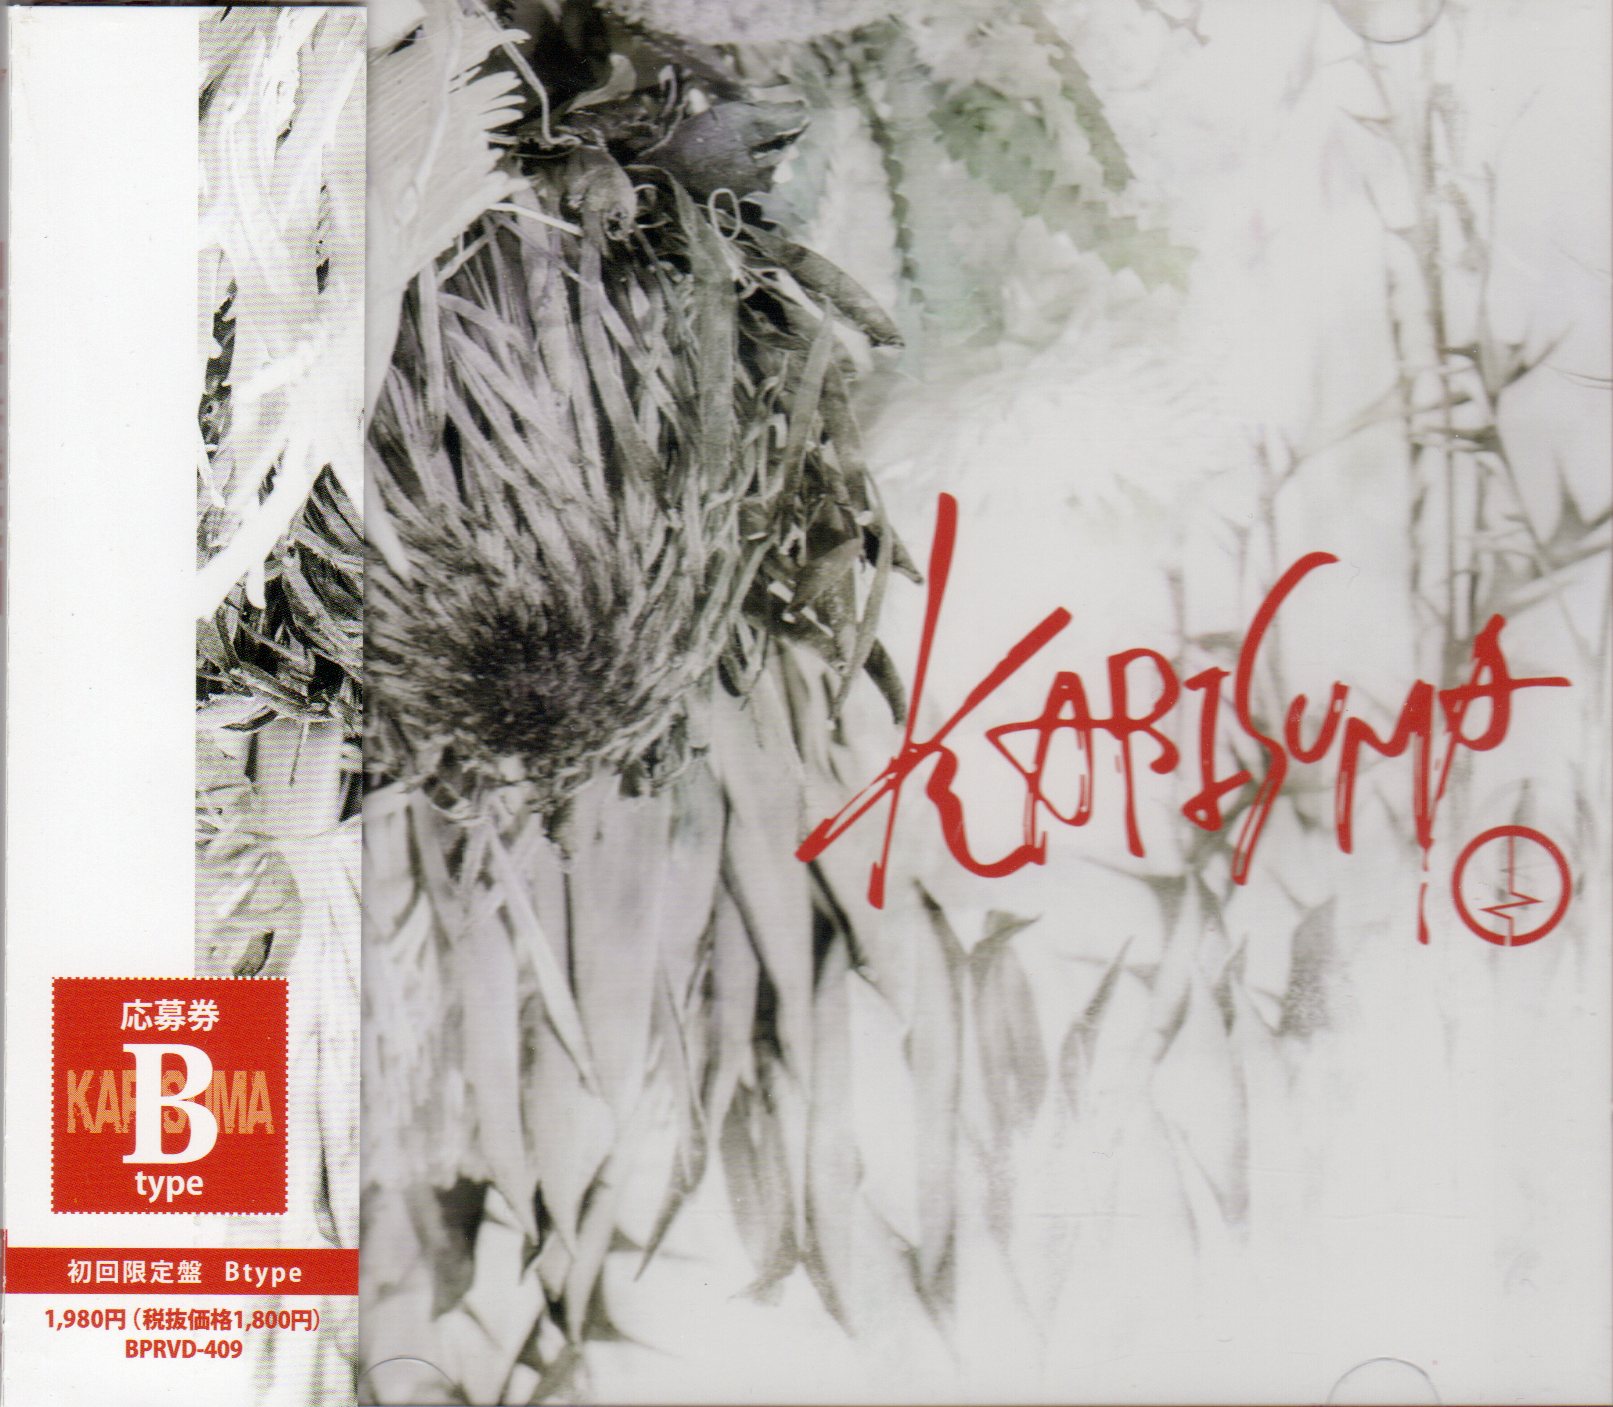 コドモドラゴン の CD 【Btype】KARISUMA